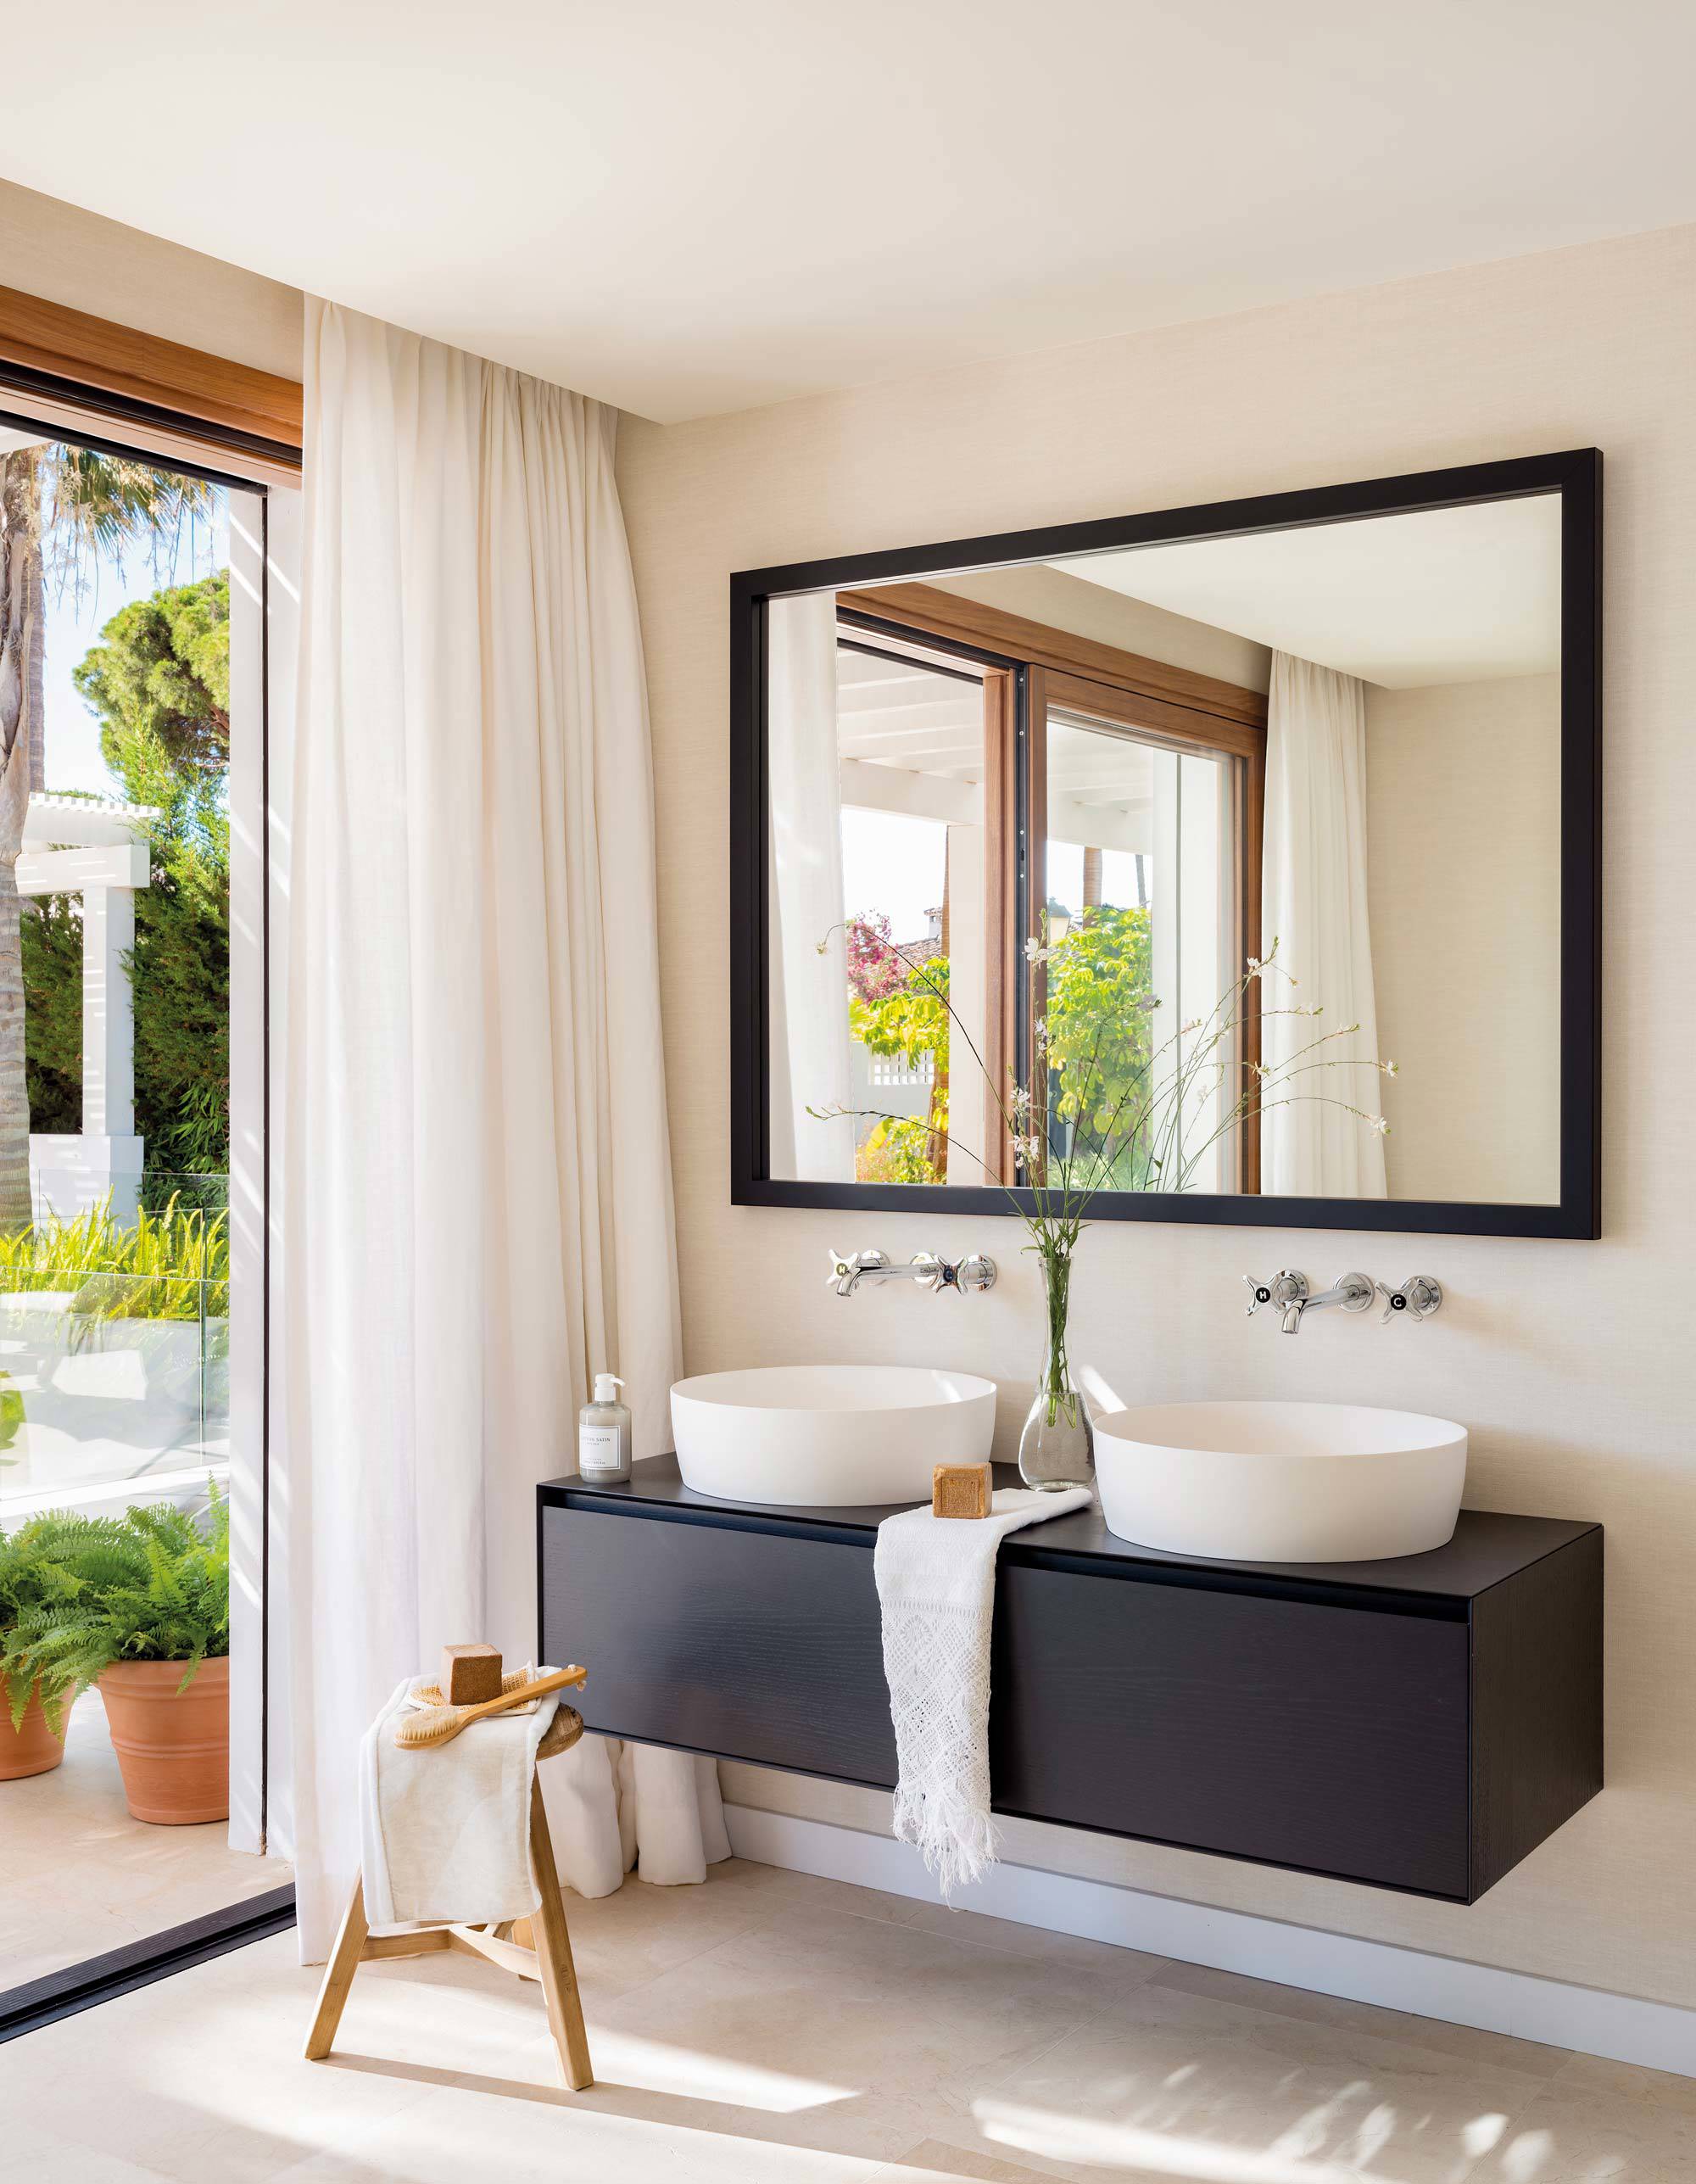 Baño moderno con mueble de lavabo suspendido de color negro.